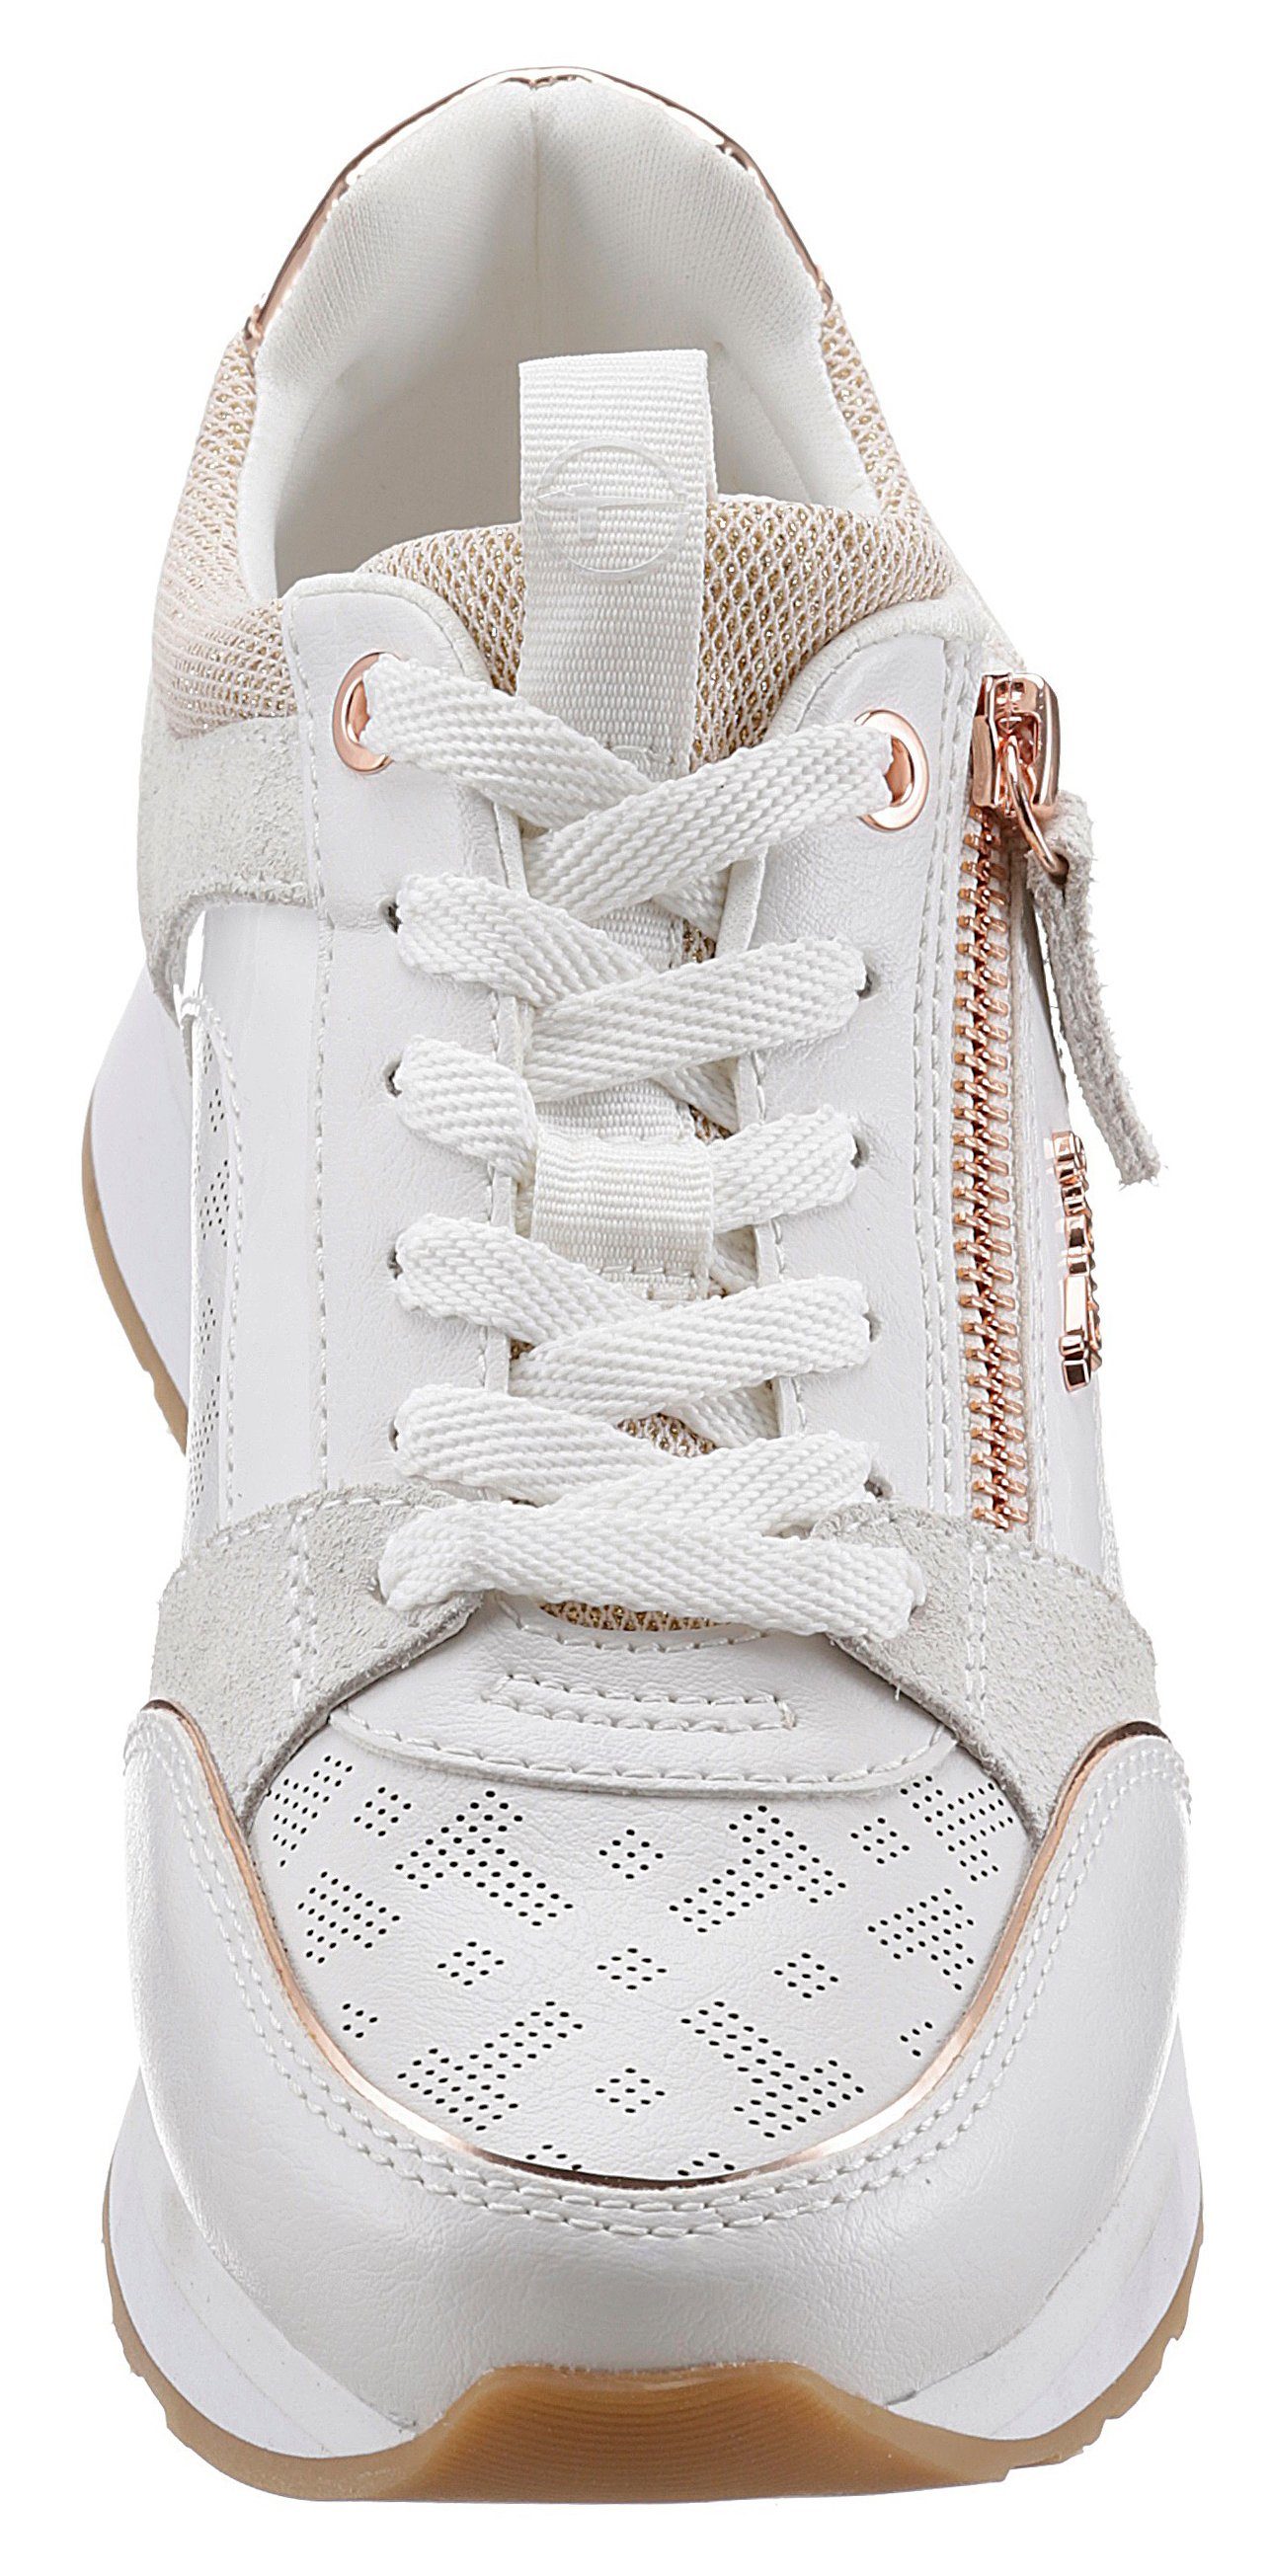 Tamaris Sneaker mit Reißverschluss weiß-roségoldfarben praktischem